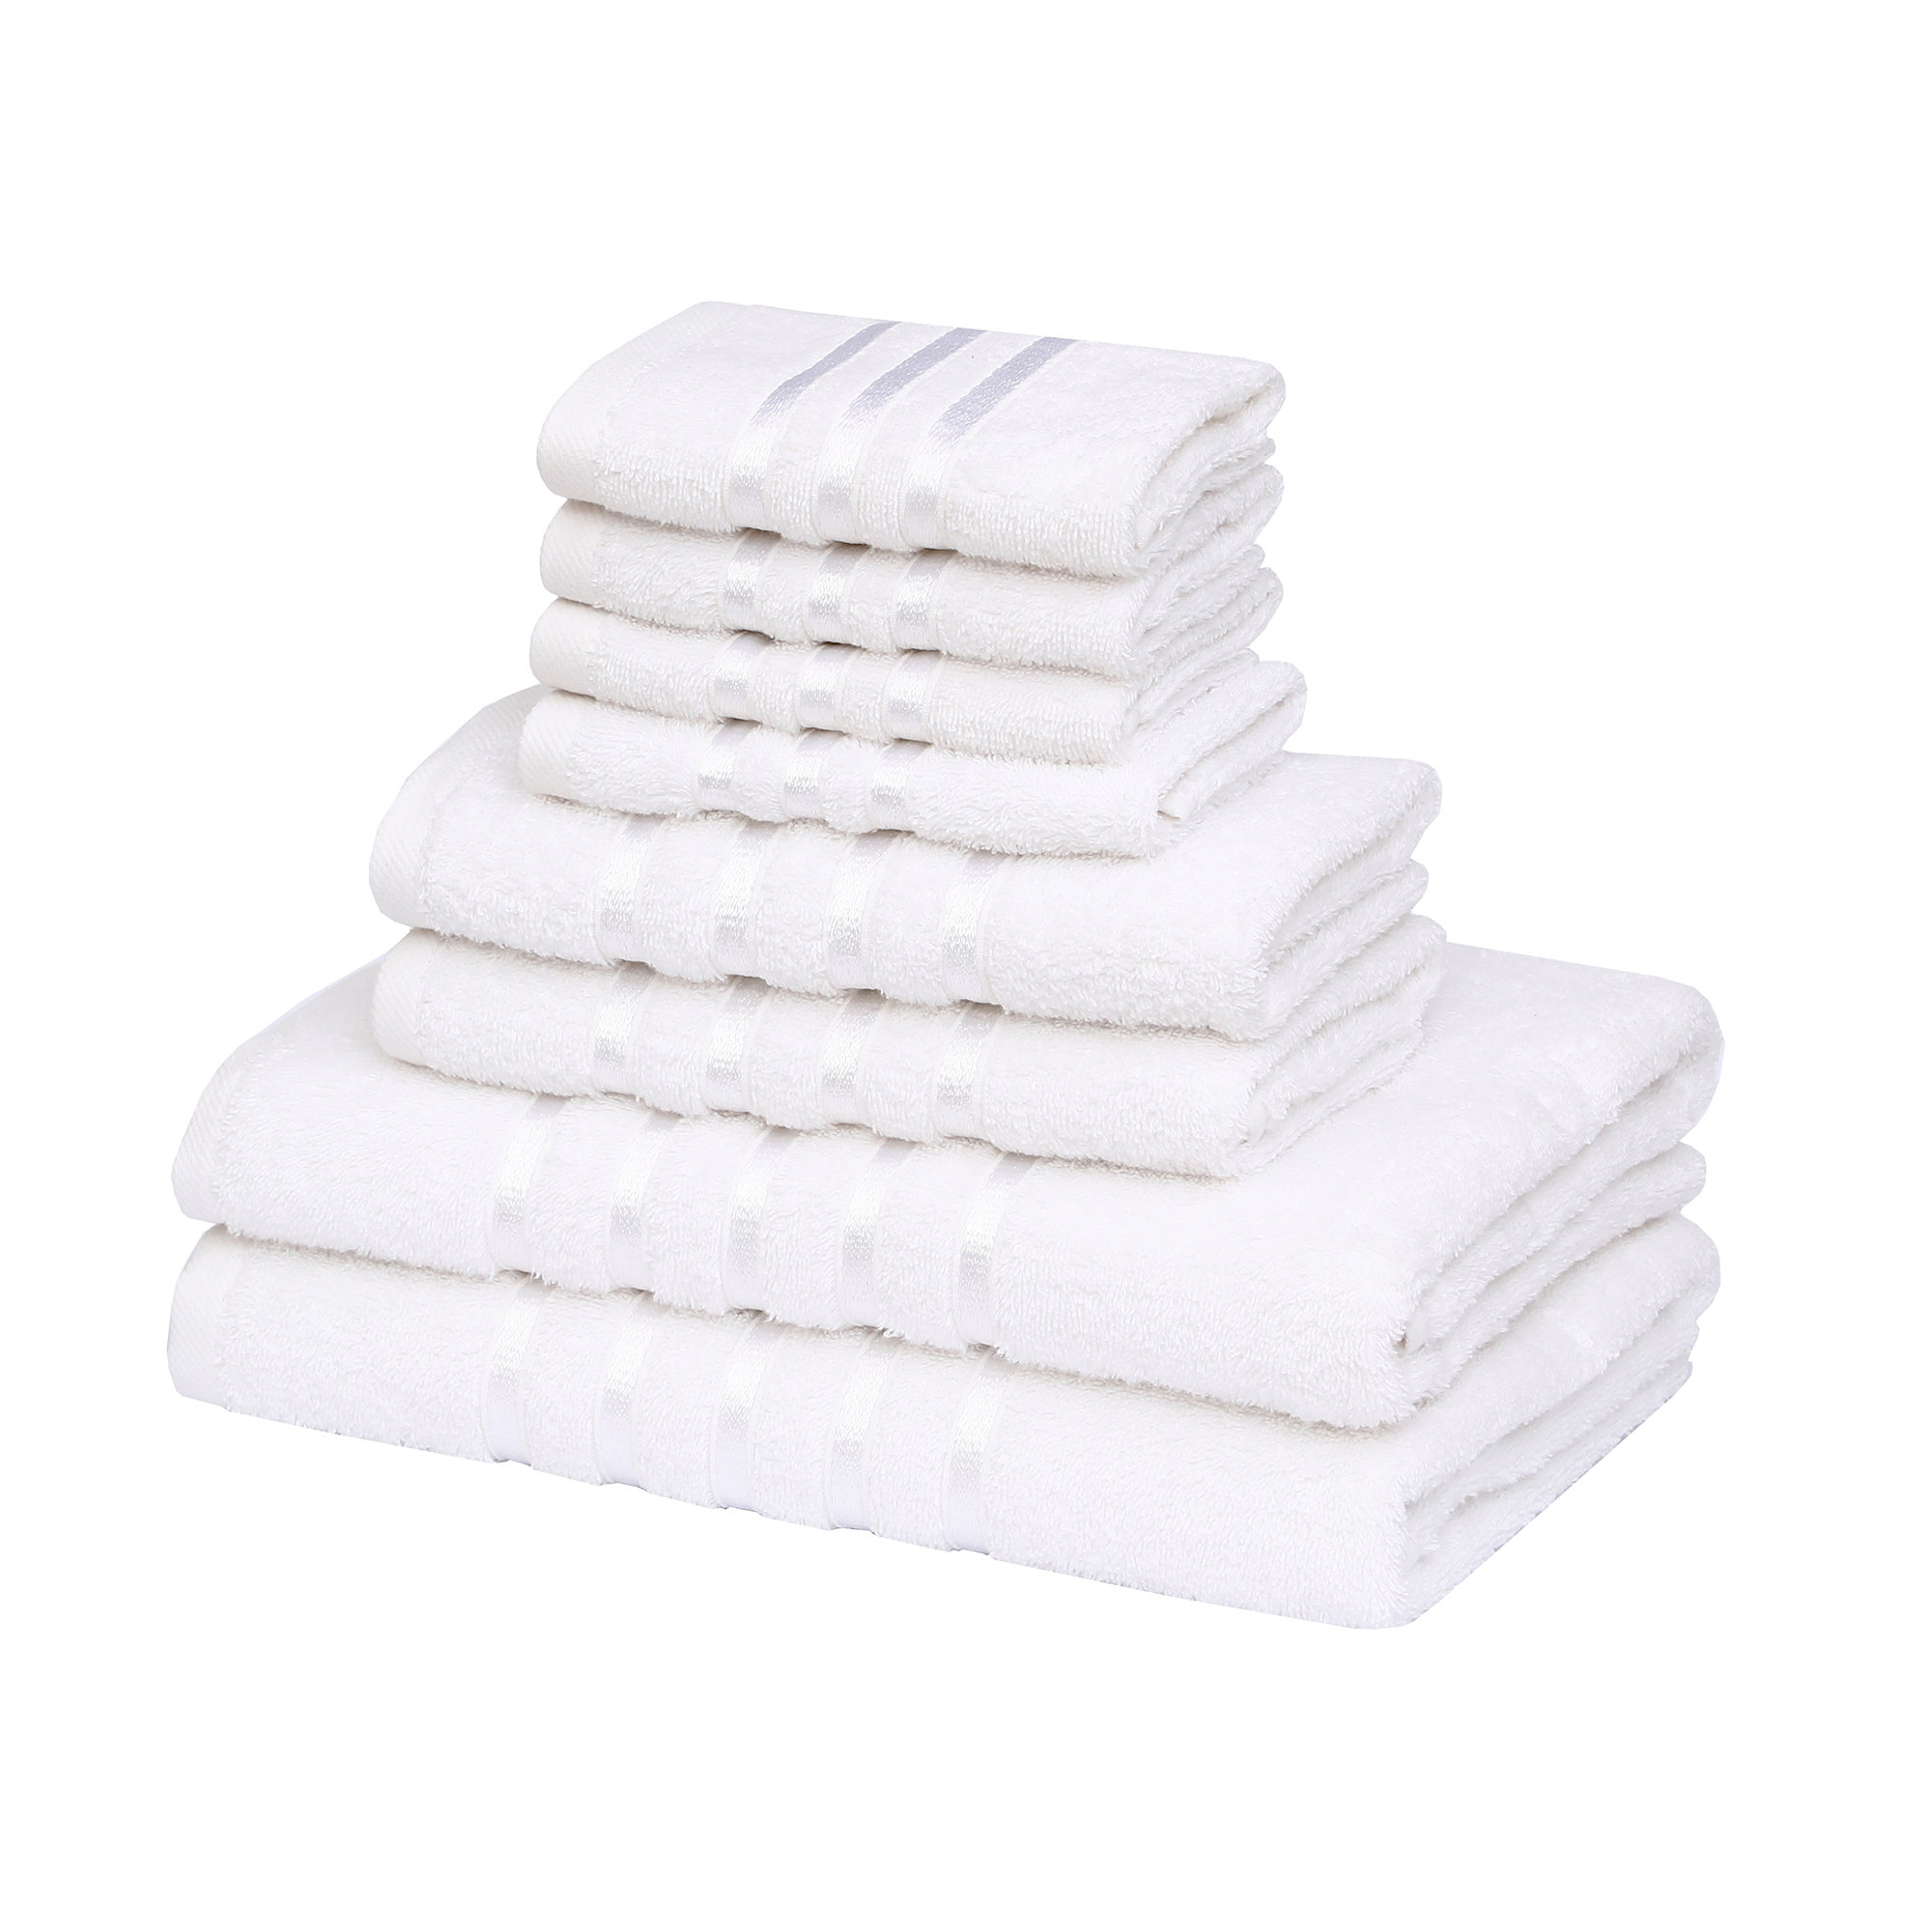 https://assets.wfcdn.com/im/15222499/compr-r85/2230/223099835/8-piece-luxury-bath-towel-sets-2-bath-towels-2-hand-towels-4-face-towels-550-gsm-100-premium-cotton.jpg